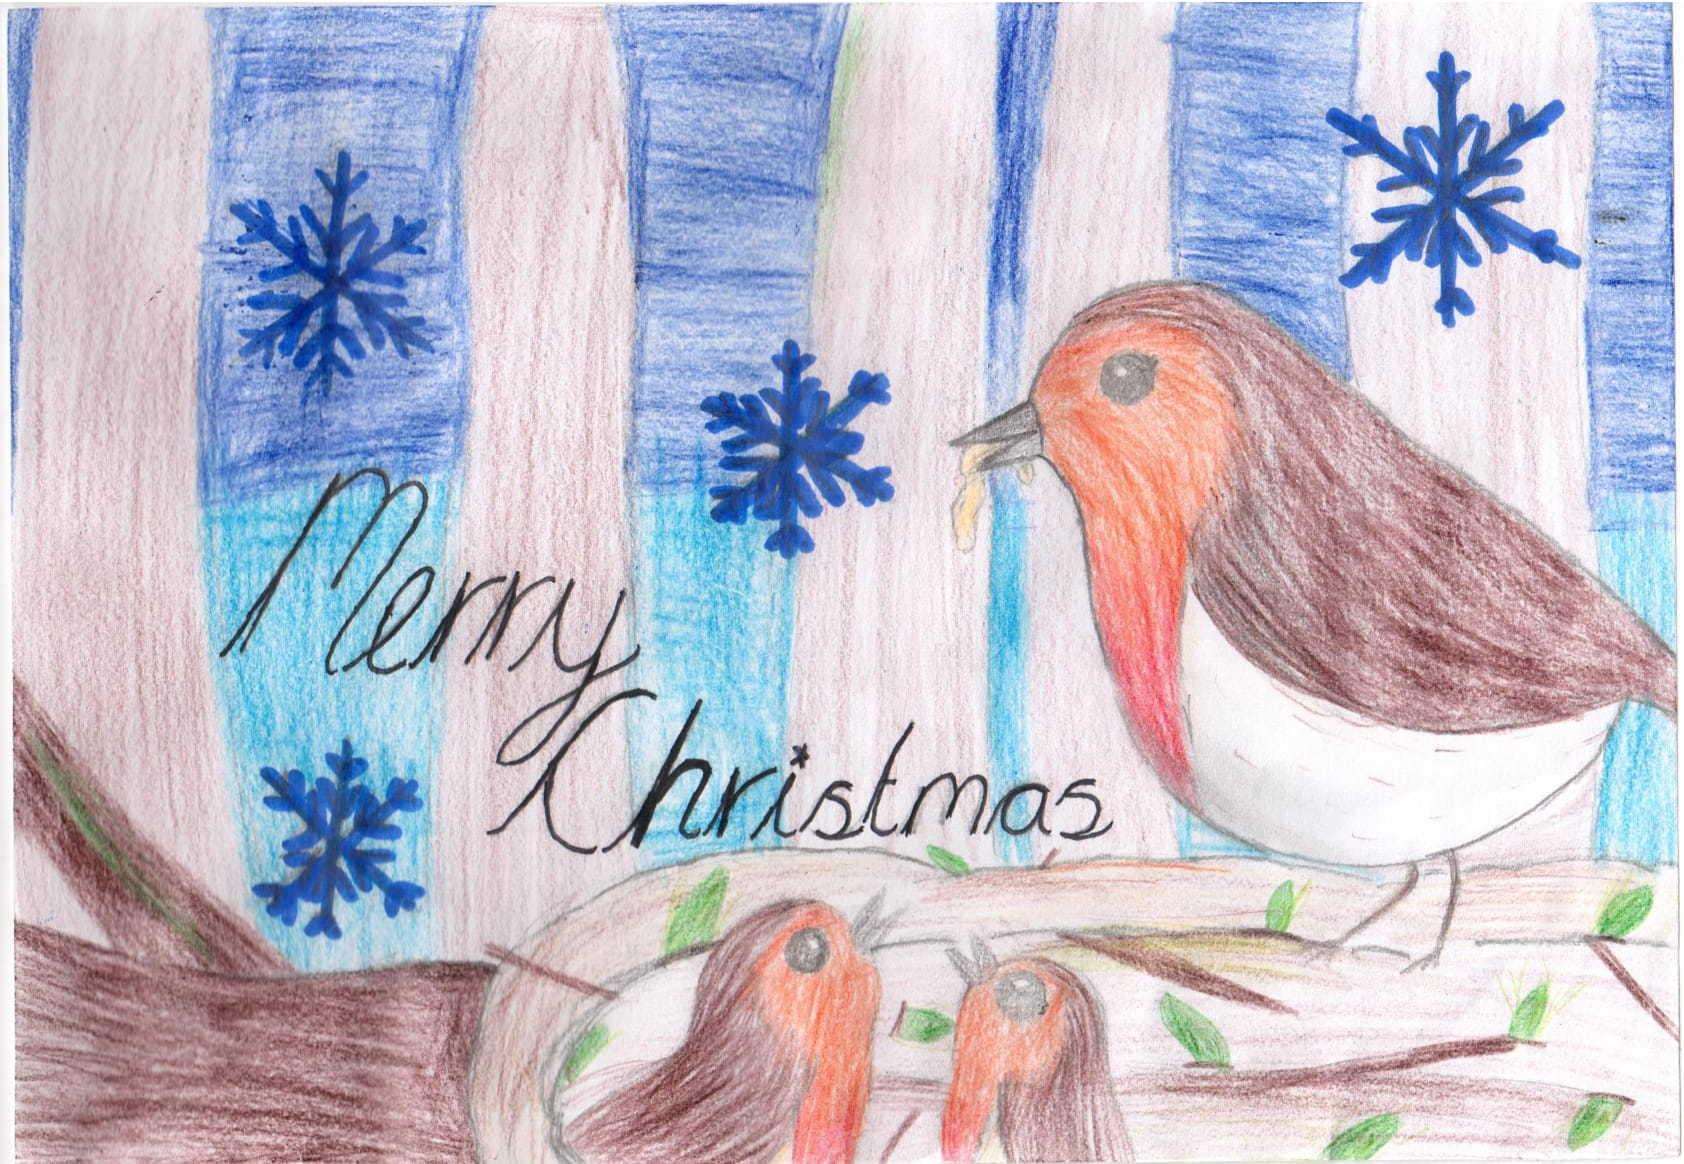 Valerie's winning Christmas card (6180924)